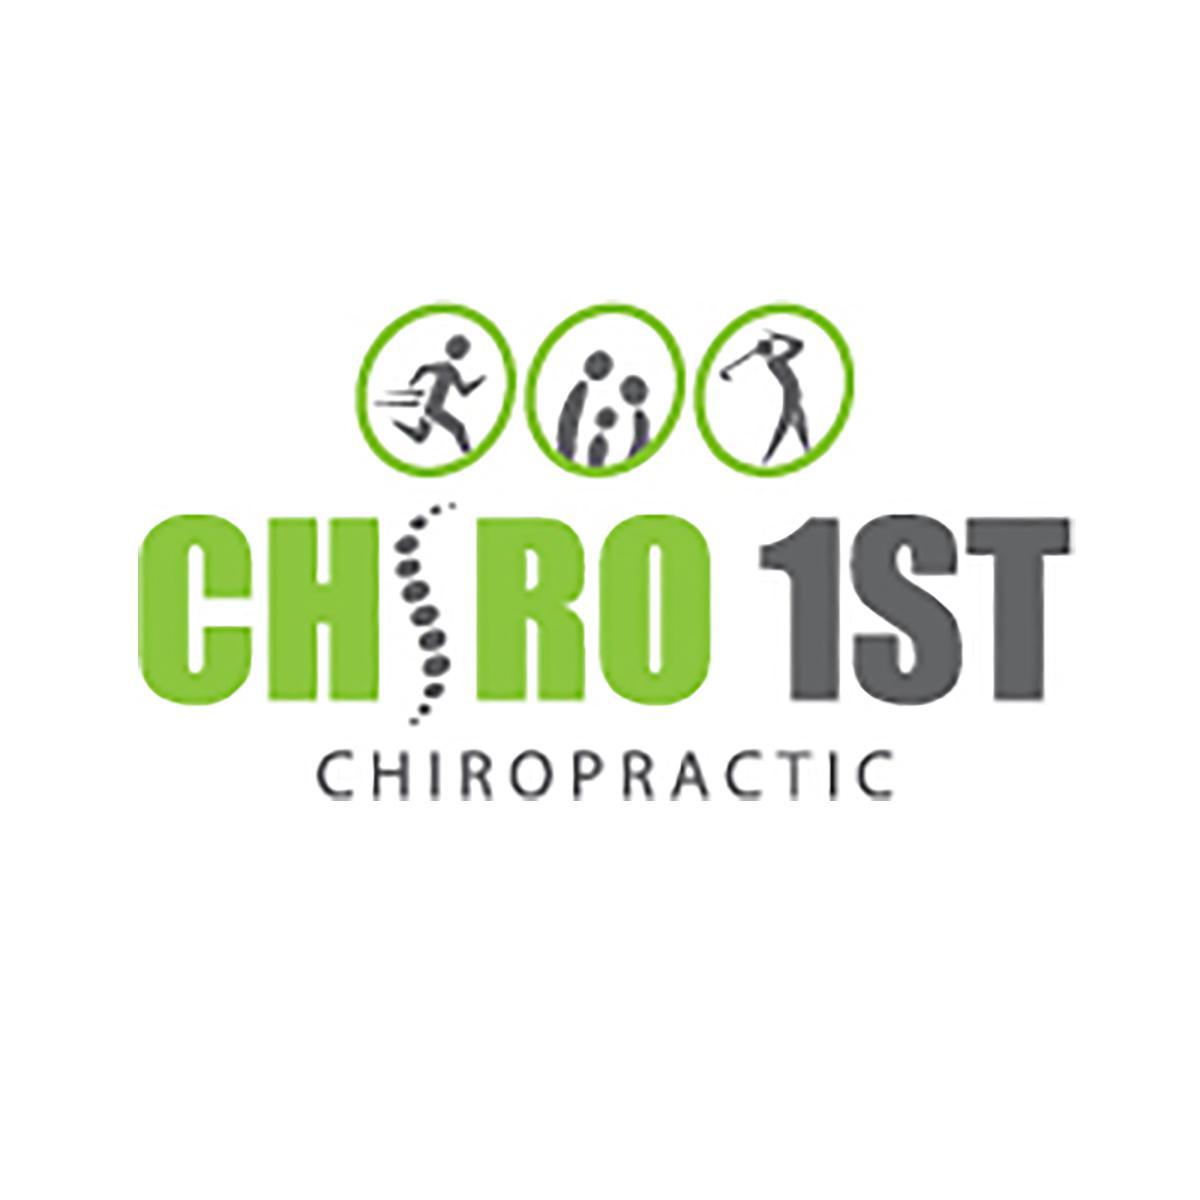 Chiro 1st Chiropractic